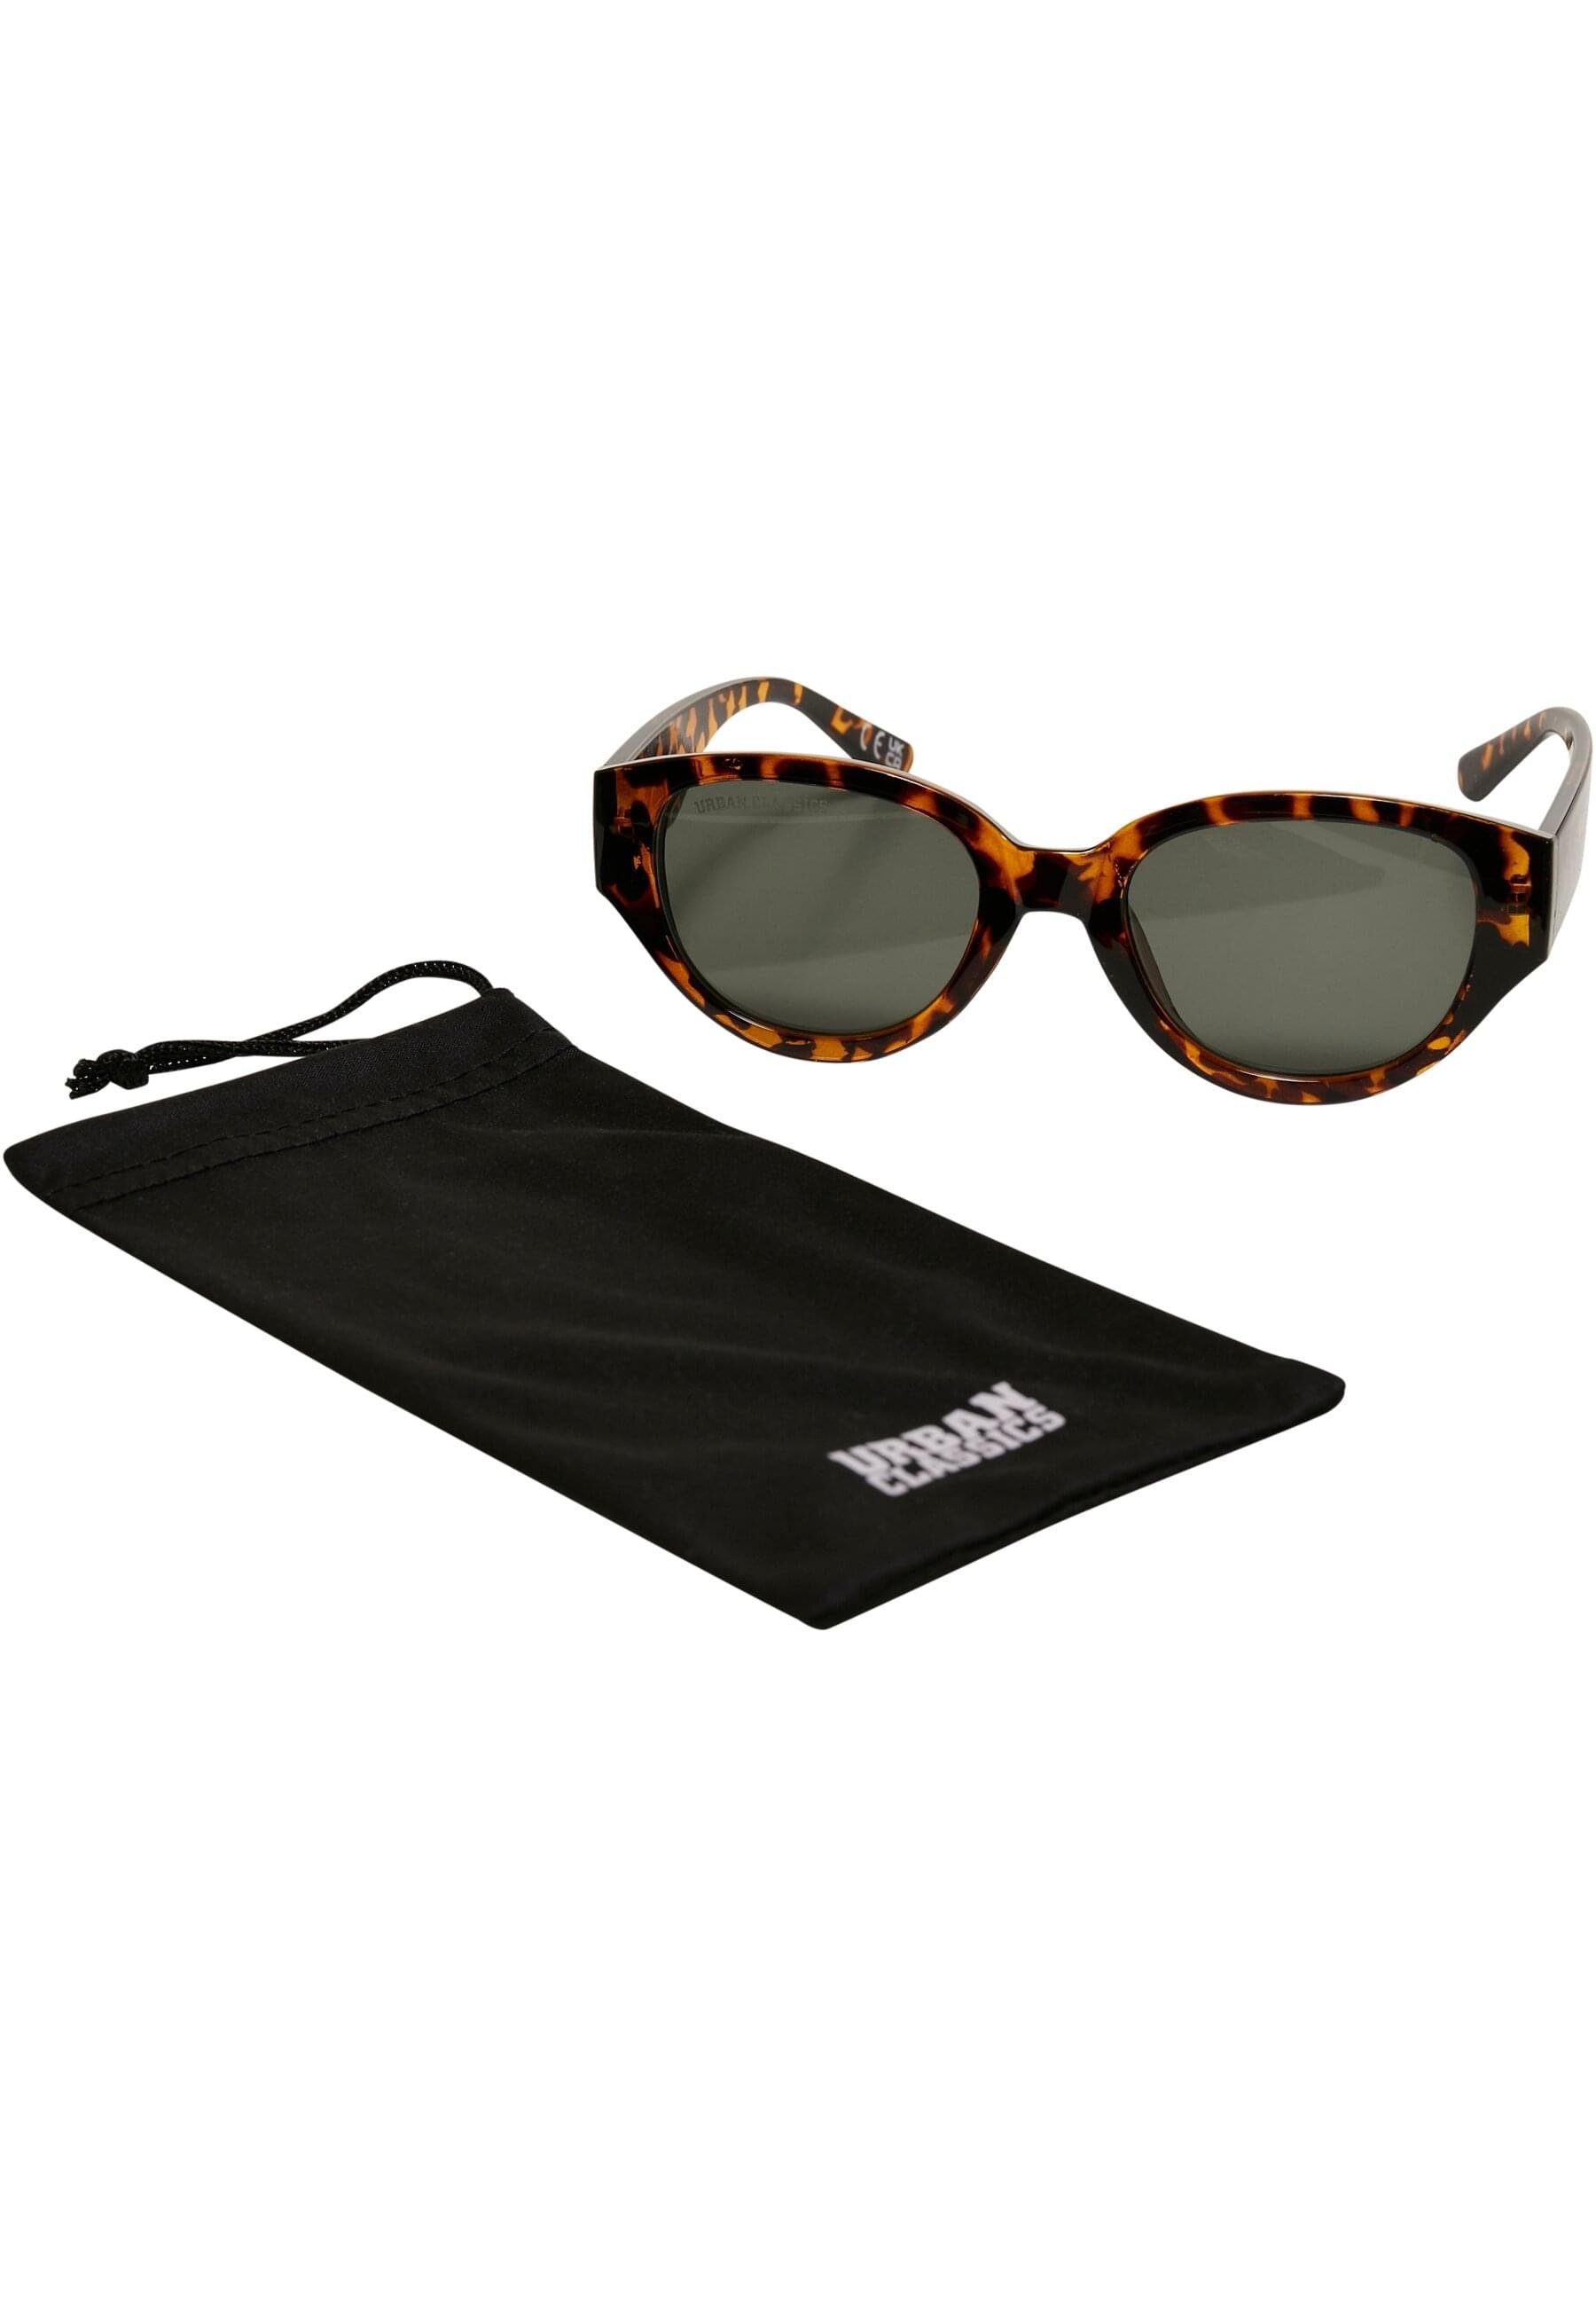 Cruz URBAN Sonnenbrille Sunglasses CLASSICS amber Santa Unisex